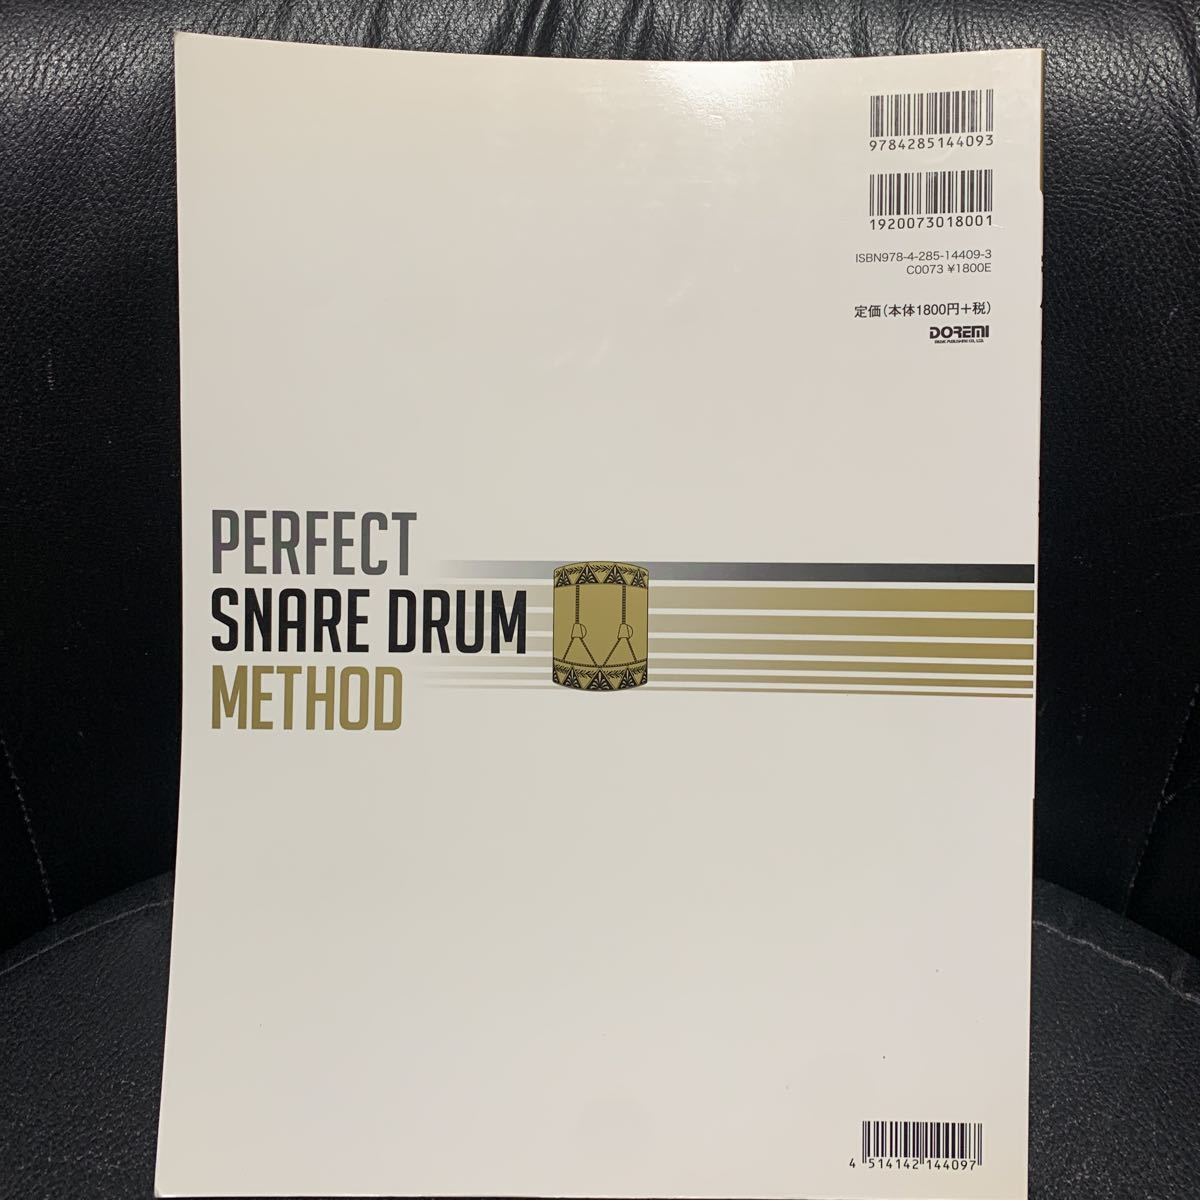  manual doremi музыкальное сопровождение выпускать фирма Perfect * snare * барабан *meso-do